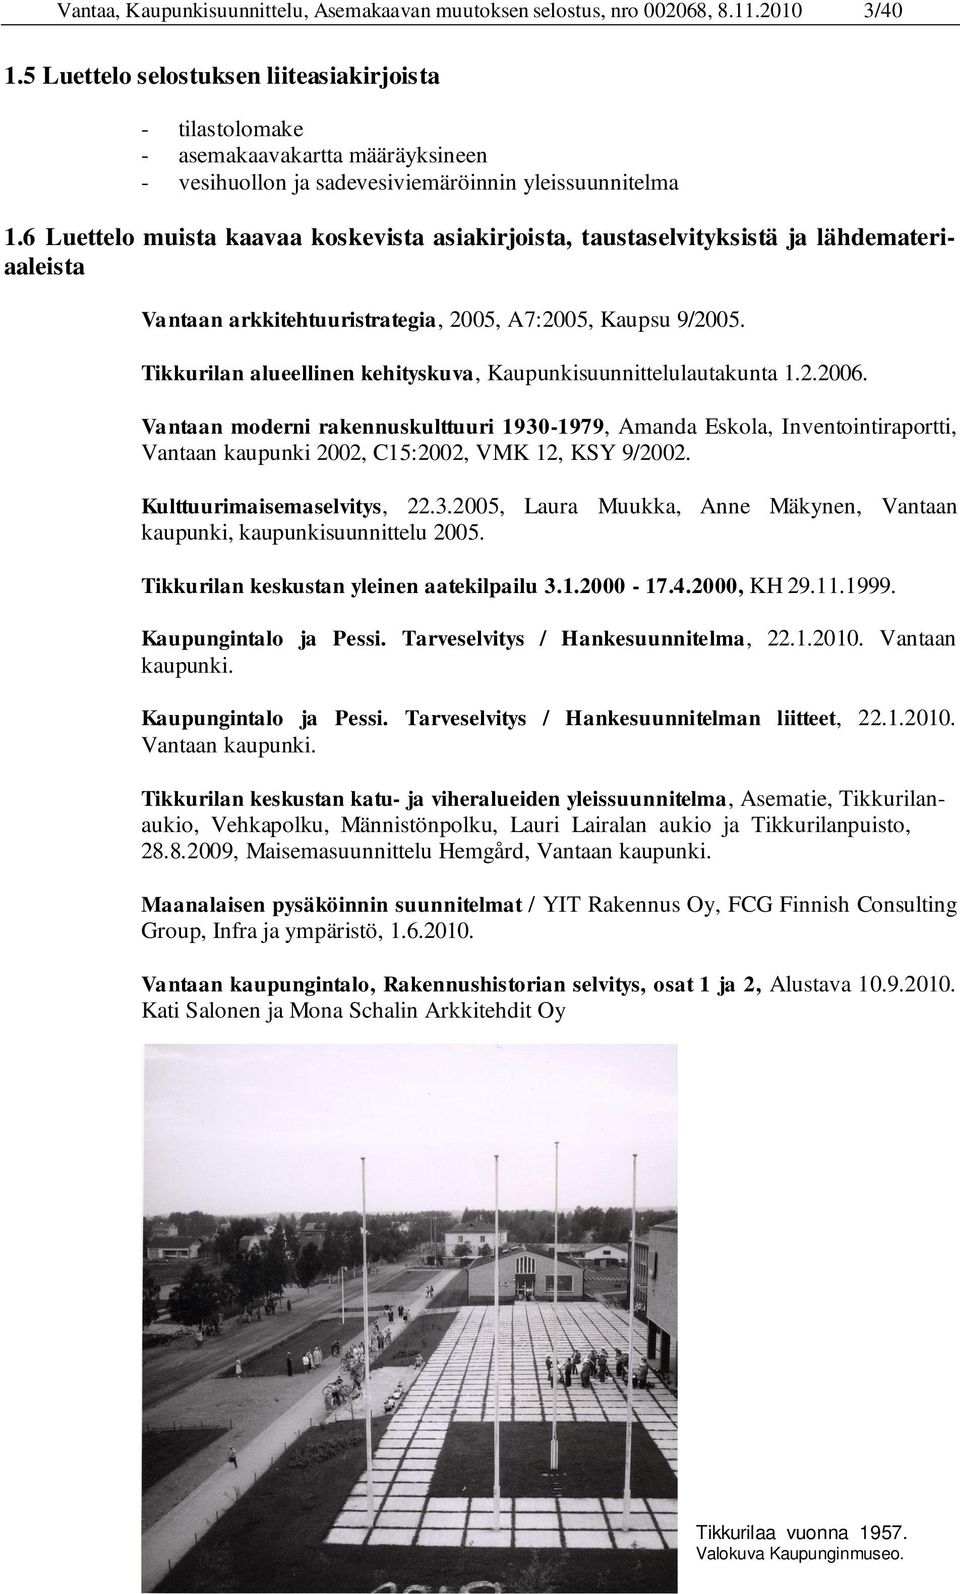 6 Luettelo muista kaavaa koskevista asiakirjoista, taustaselvityksistä ja lähdemateriaaleista Vantaan arkkitehtuuristrategia, 2005, A7:2005, Kaupsu 9/2005.